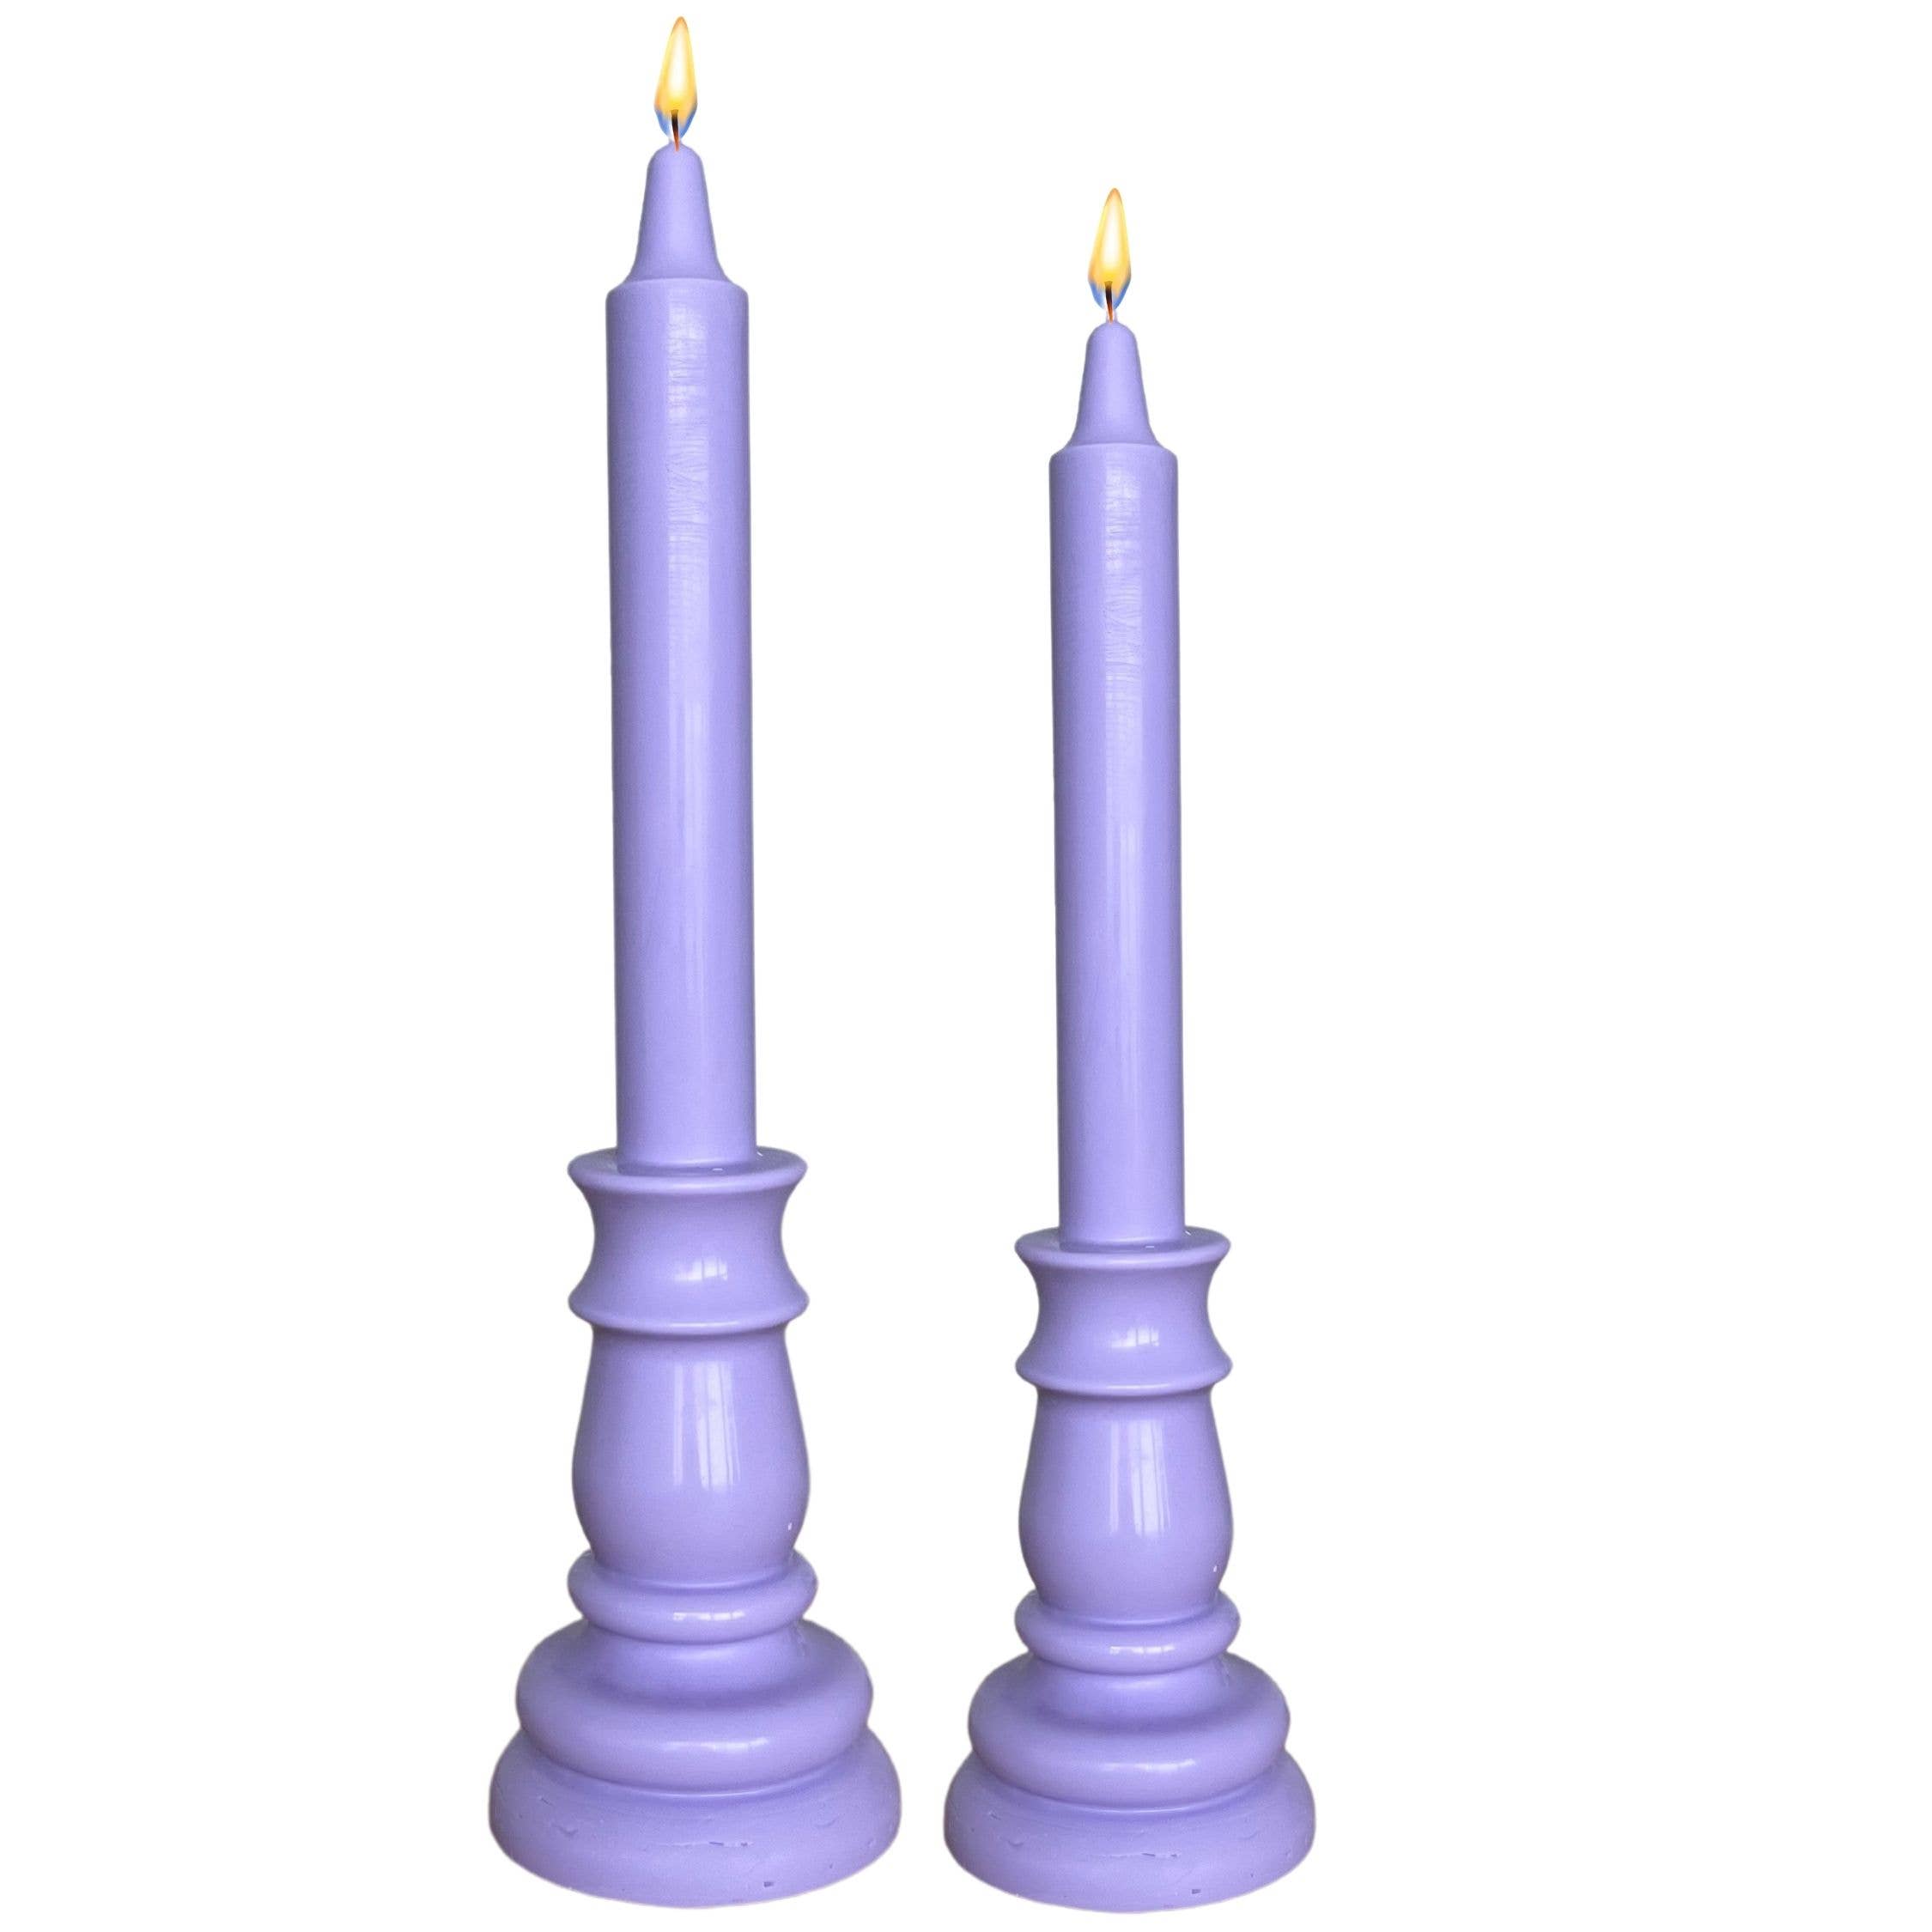 Candela Candles - Provence Lavender